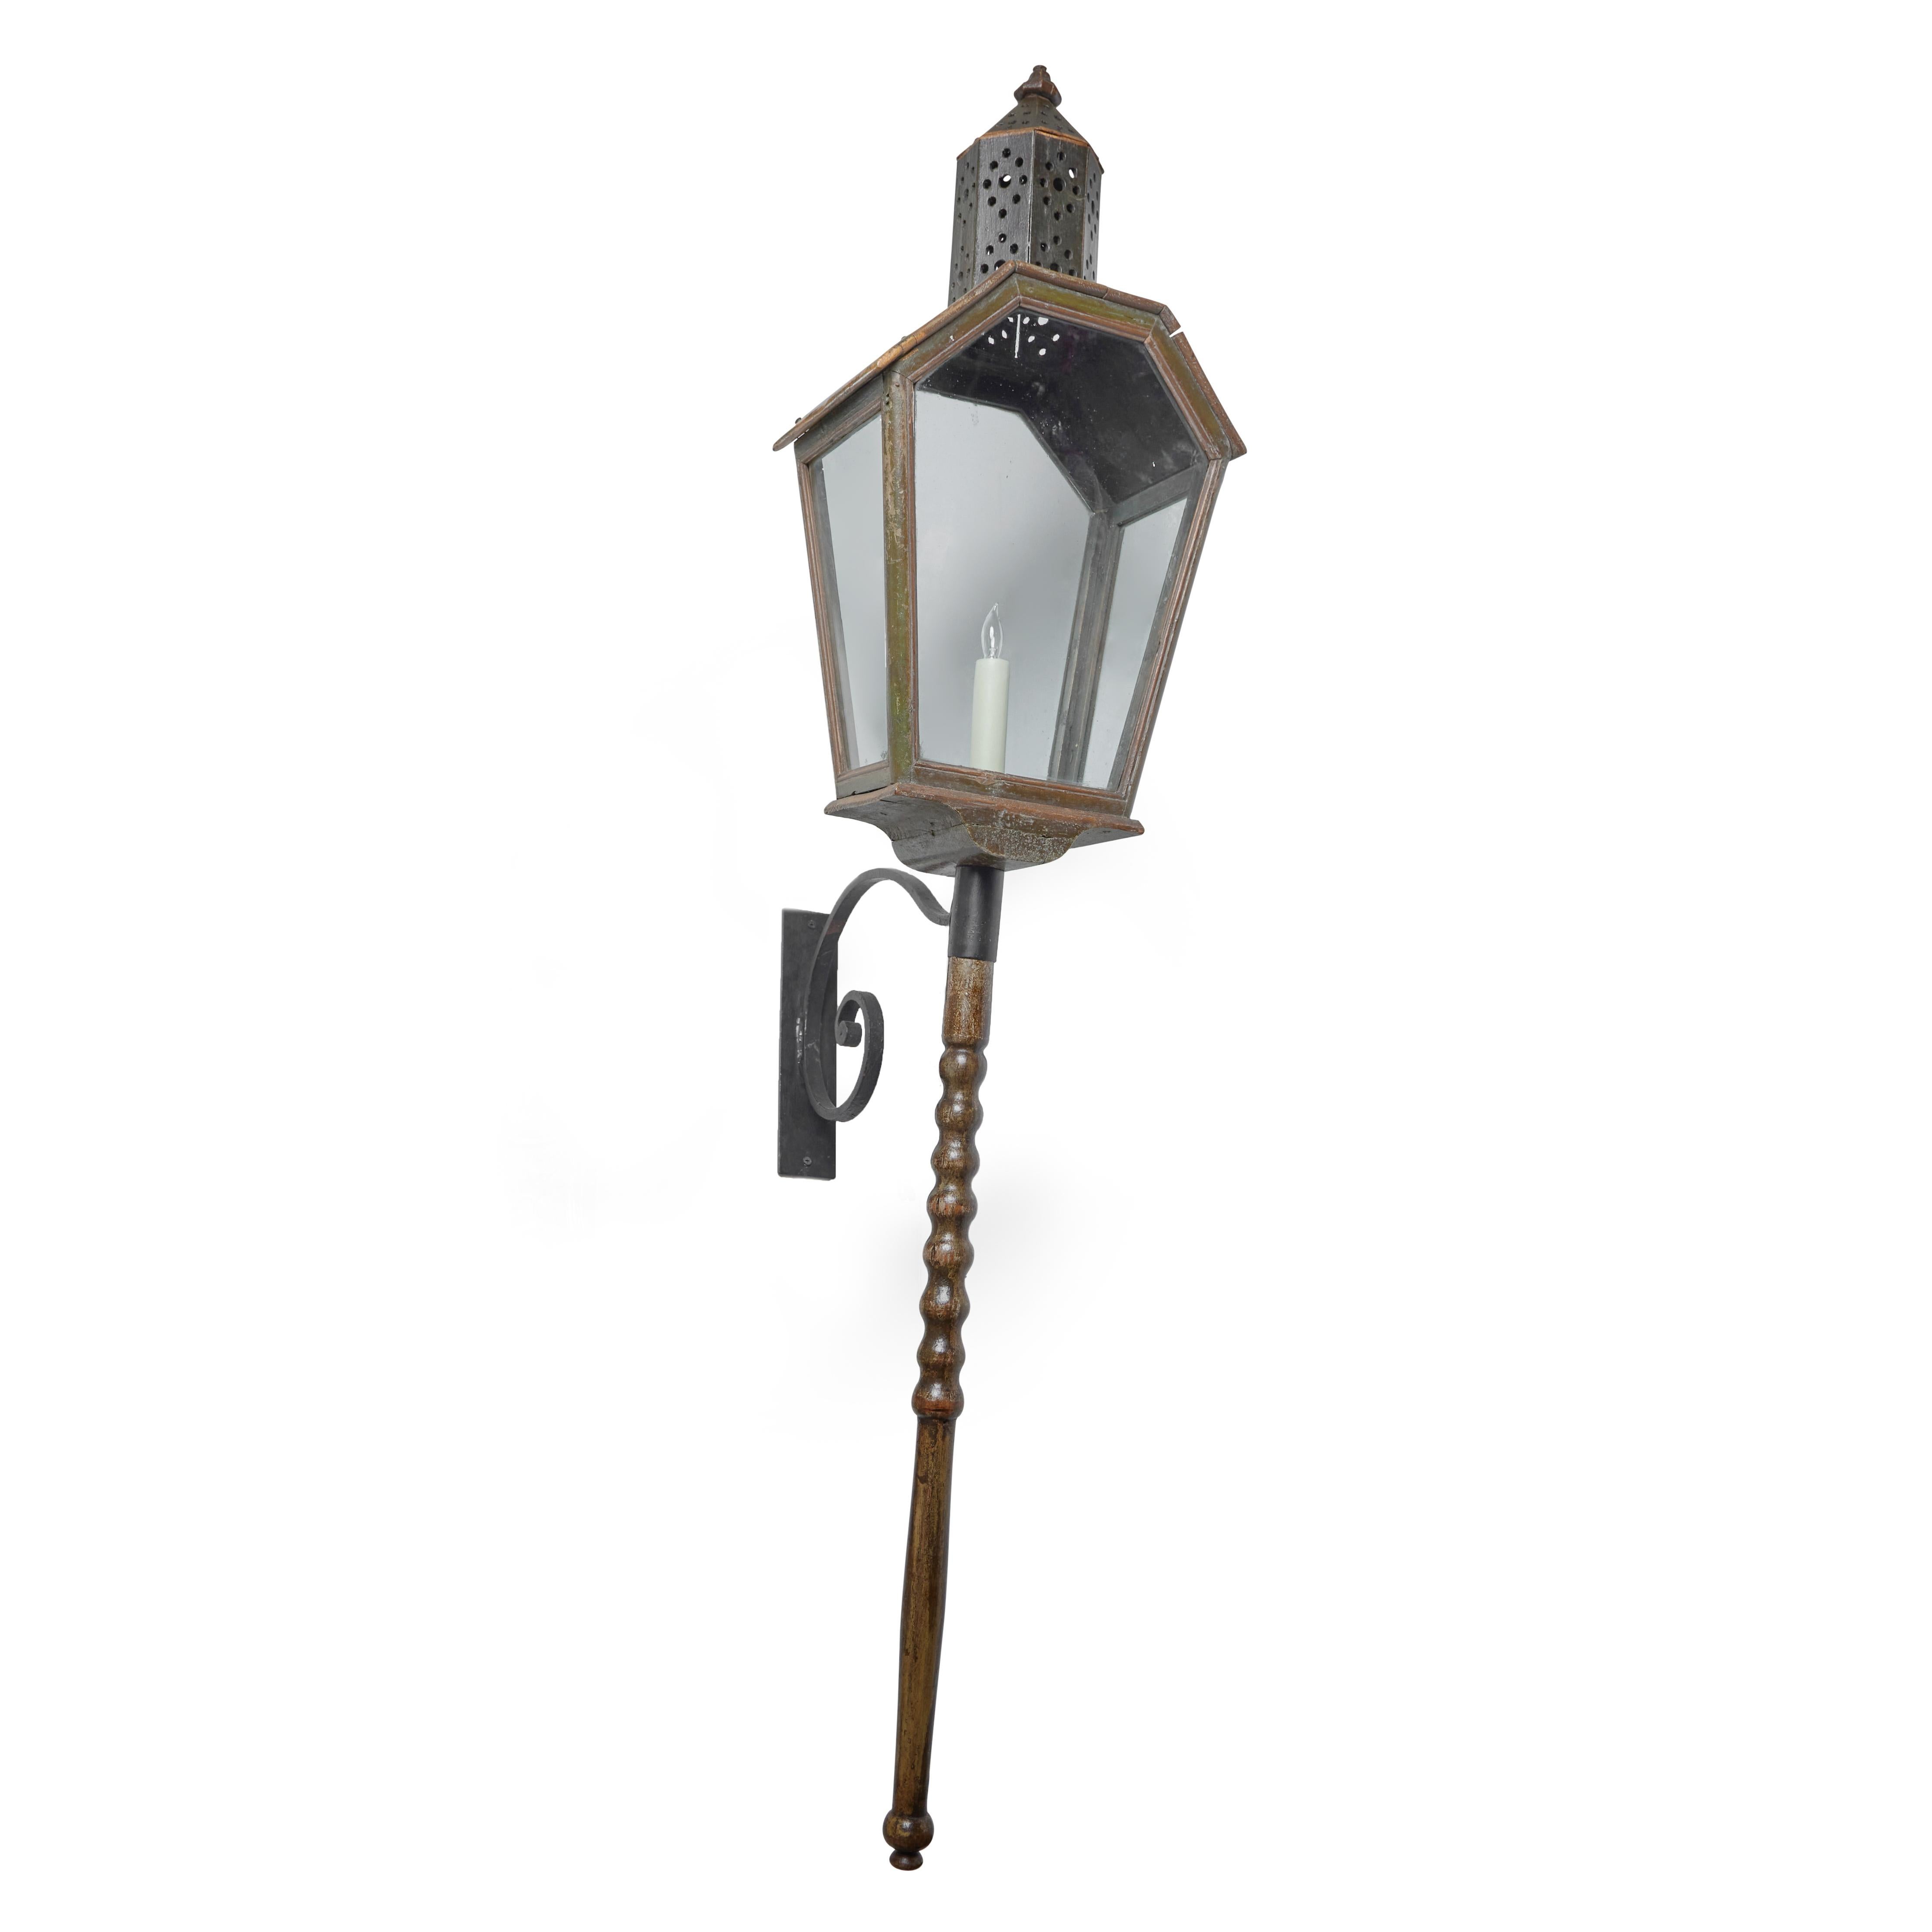 Paire de lanternes à gaz en bois peint, électrifiées, avec verre d'origine. Montures en fer.  Provenant de la région du Piémont en Italie.  Câblé pour les États-Unis
